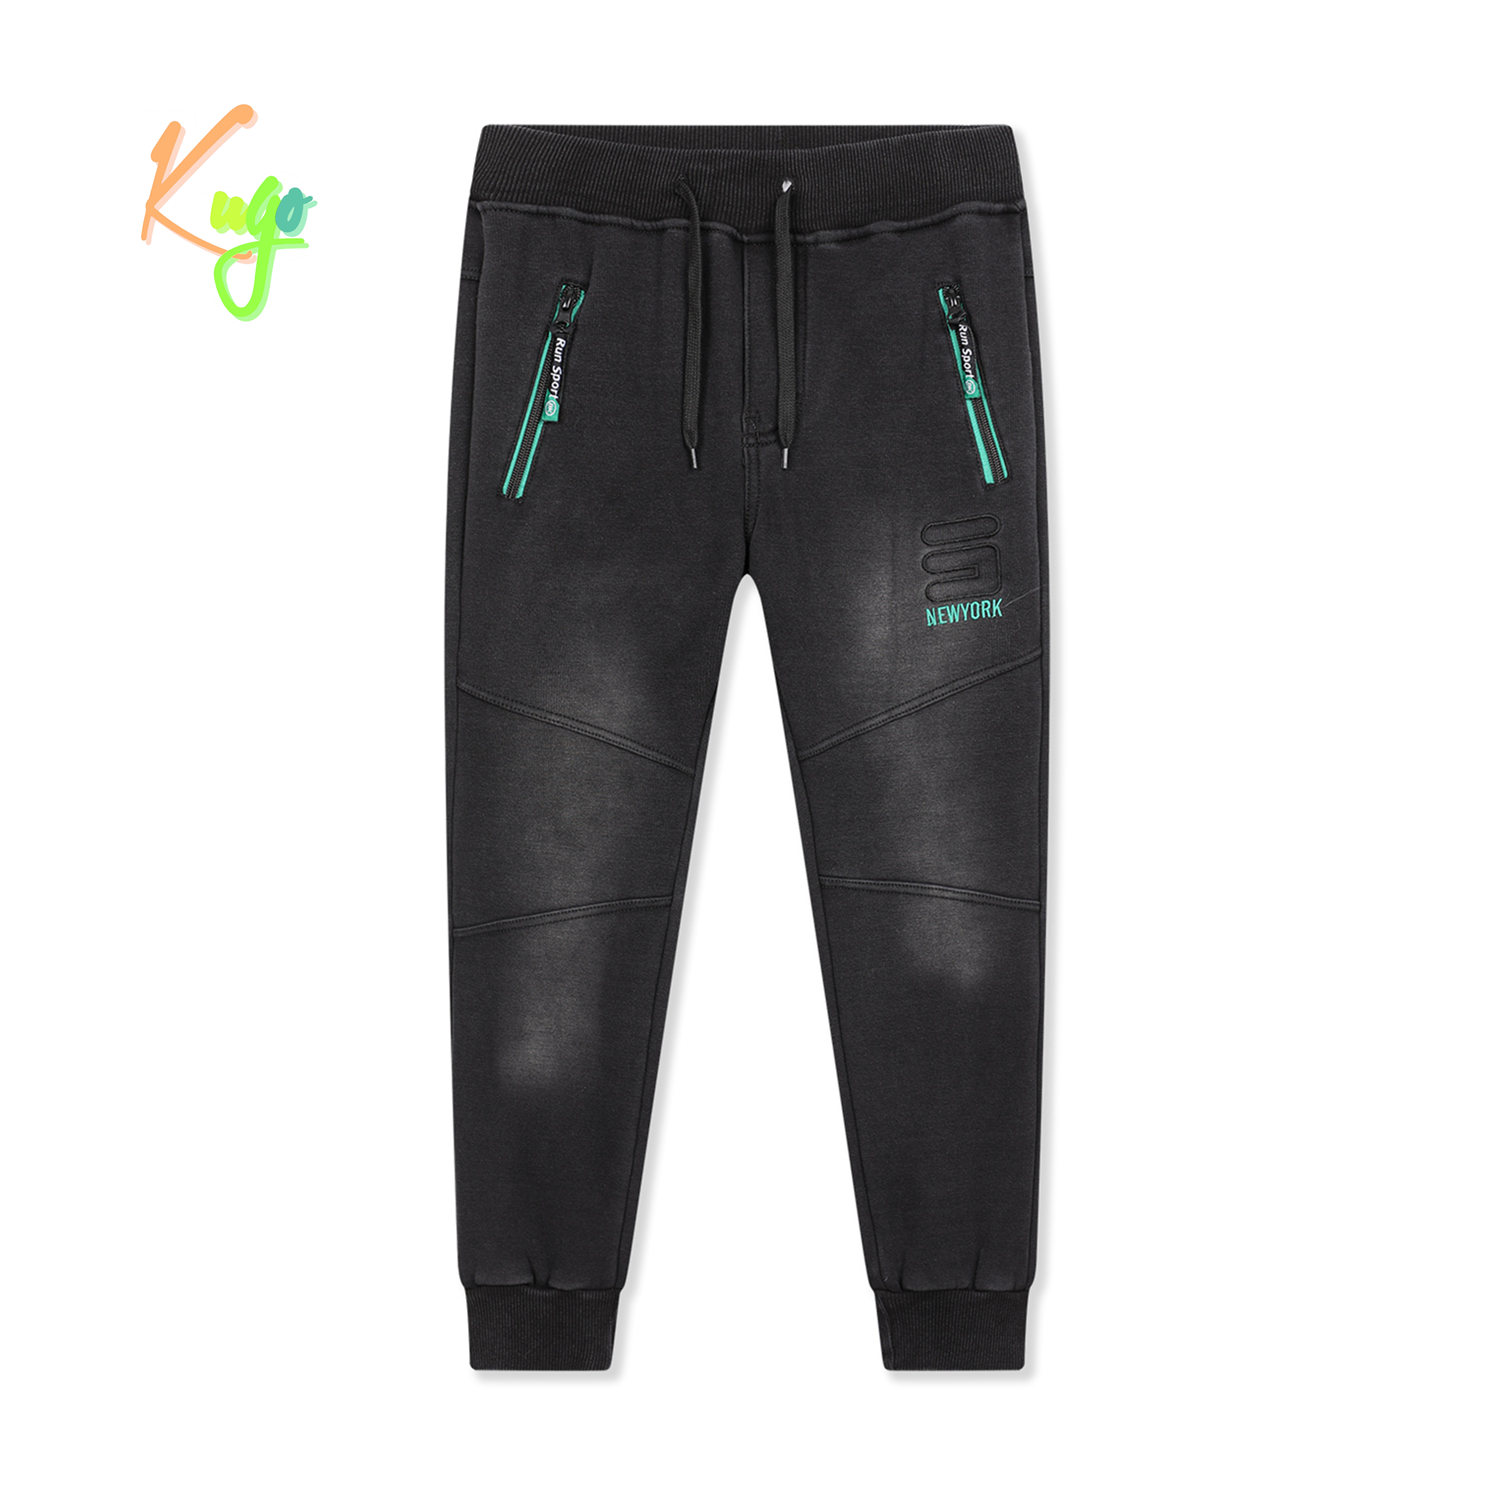 Chlapecké riflové kalhoty/ tepláky, zateplené - KUGO FK0318, černá Barva: Černá, Velikost: 140